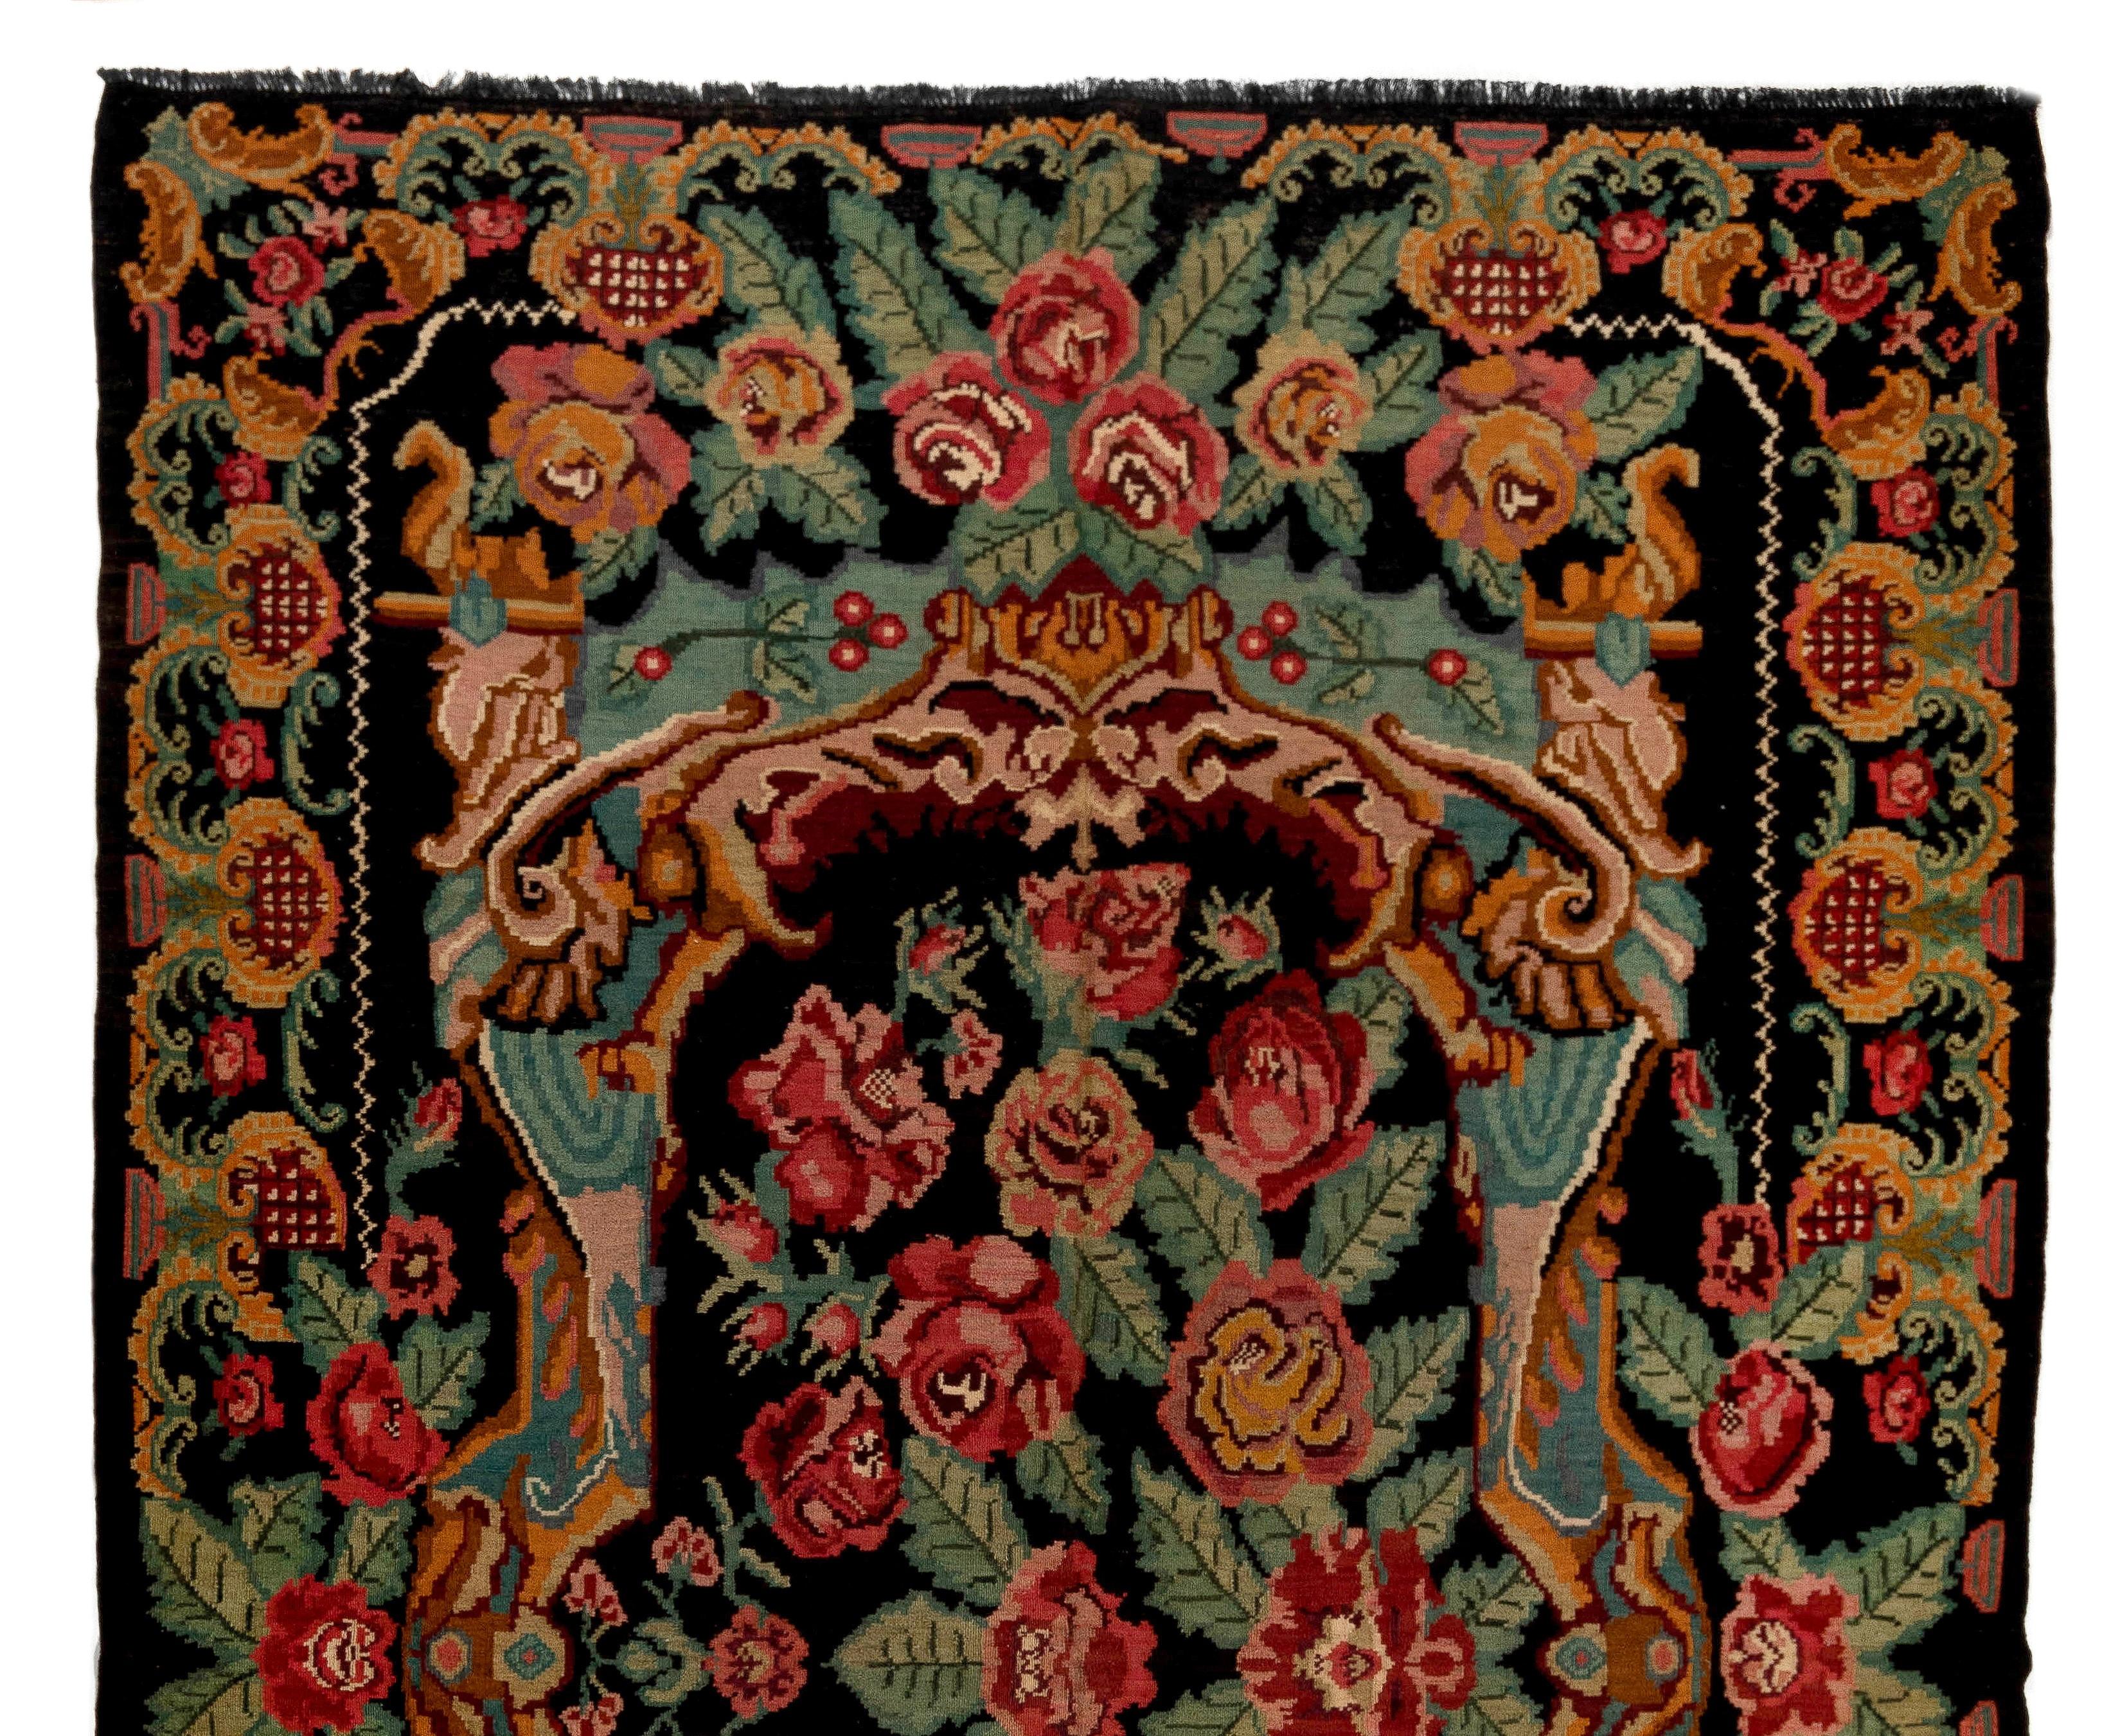 Einzigartiger vintage bessarabischer Kelim.  
Ein handgewebter osteuropäischer Teppich aus Moldawien. Diese traditionellen moldauischen Flachgewebe sind von alten Aubusson-Teppichen inspiriert, zeichnen sich jedoch durch ihren schwarzen Grund und